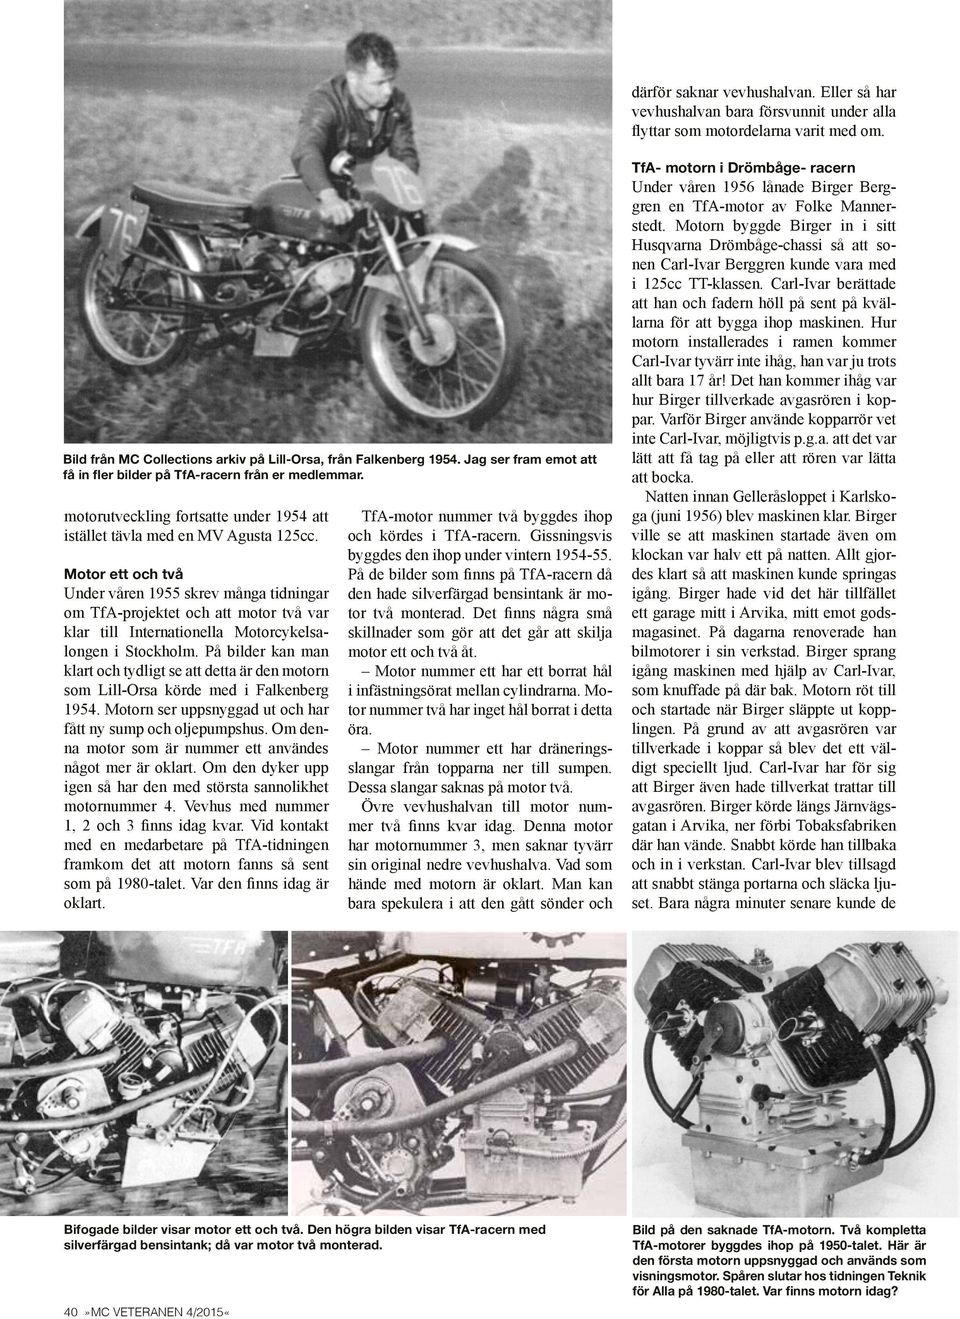 Motor ett och två Under våren 1955 skrev många tidningar om TfA-projektet och att motor två var klar till Internationella Motorcykelsalongen i Stockholm.